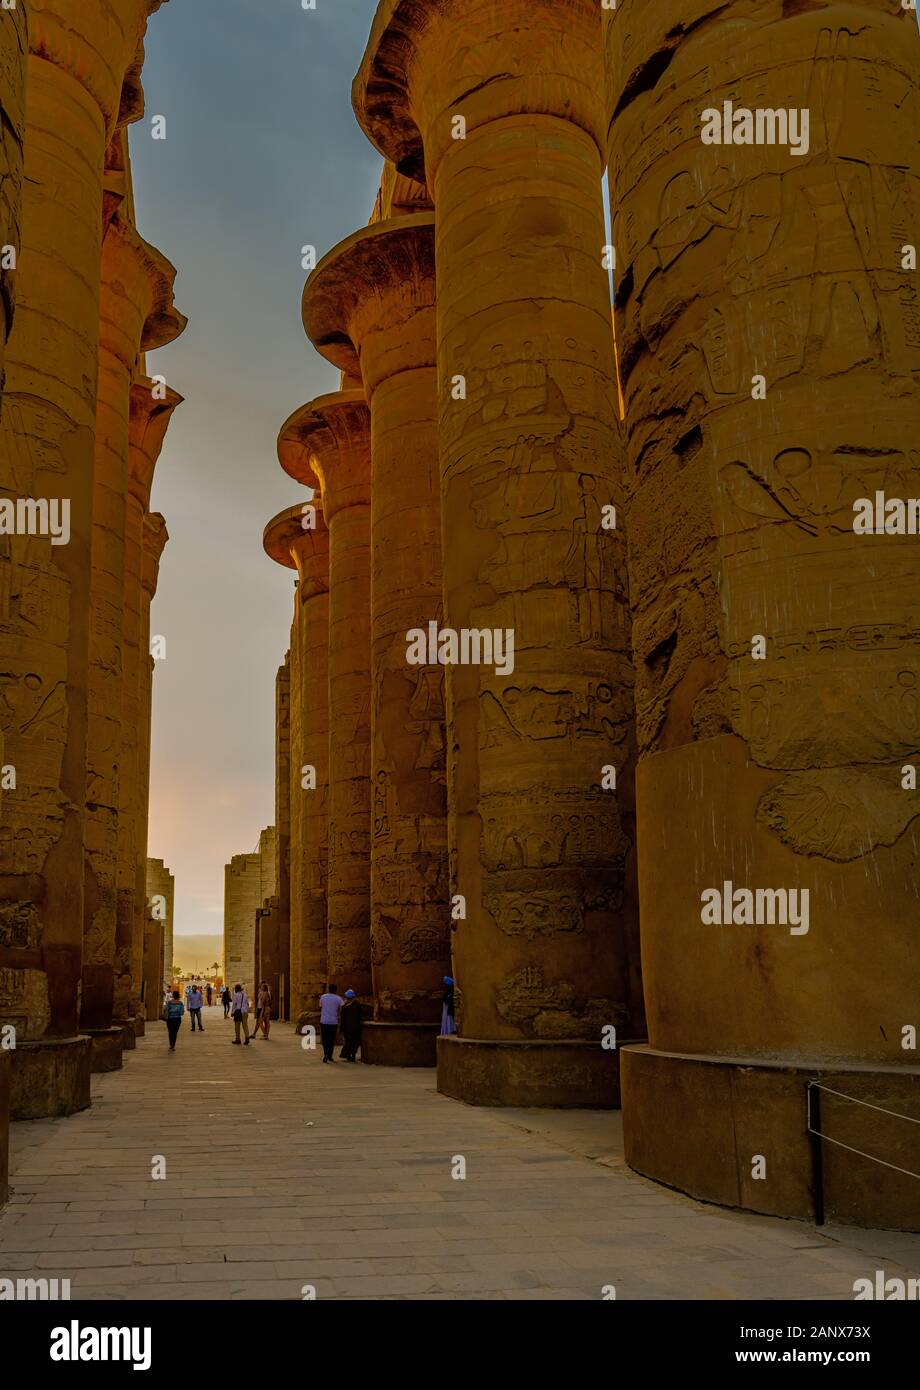 La grande salle Hypostyle de Karnak comprend 134 gigantesques colonnes de pierre avec 12 grandes colonnes debout 80 pieds de haut bordant l'allée centrale Banque D'Images